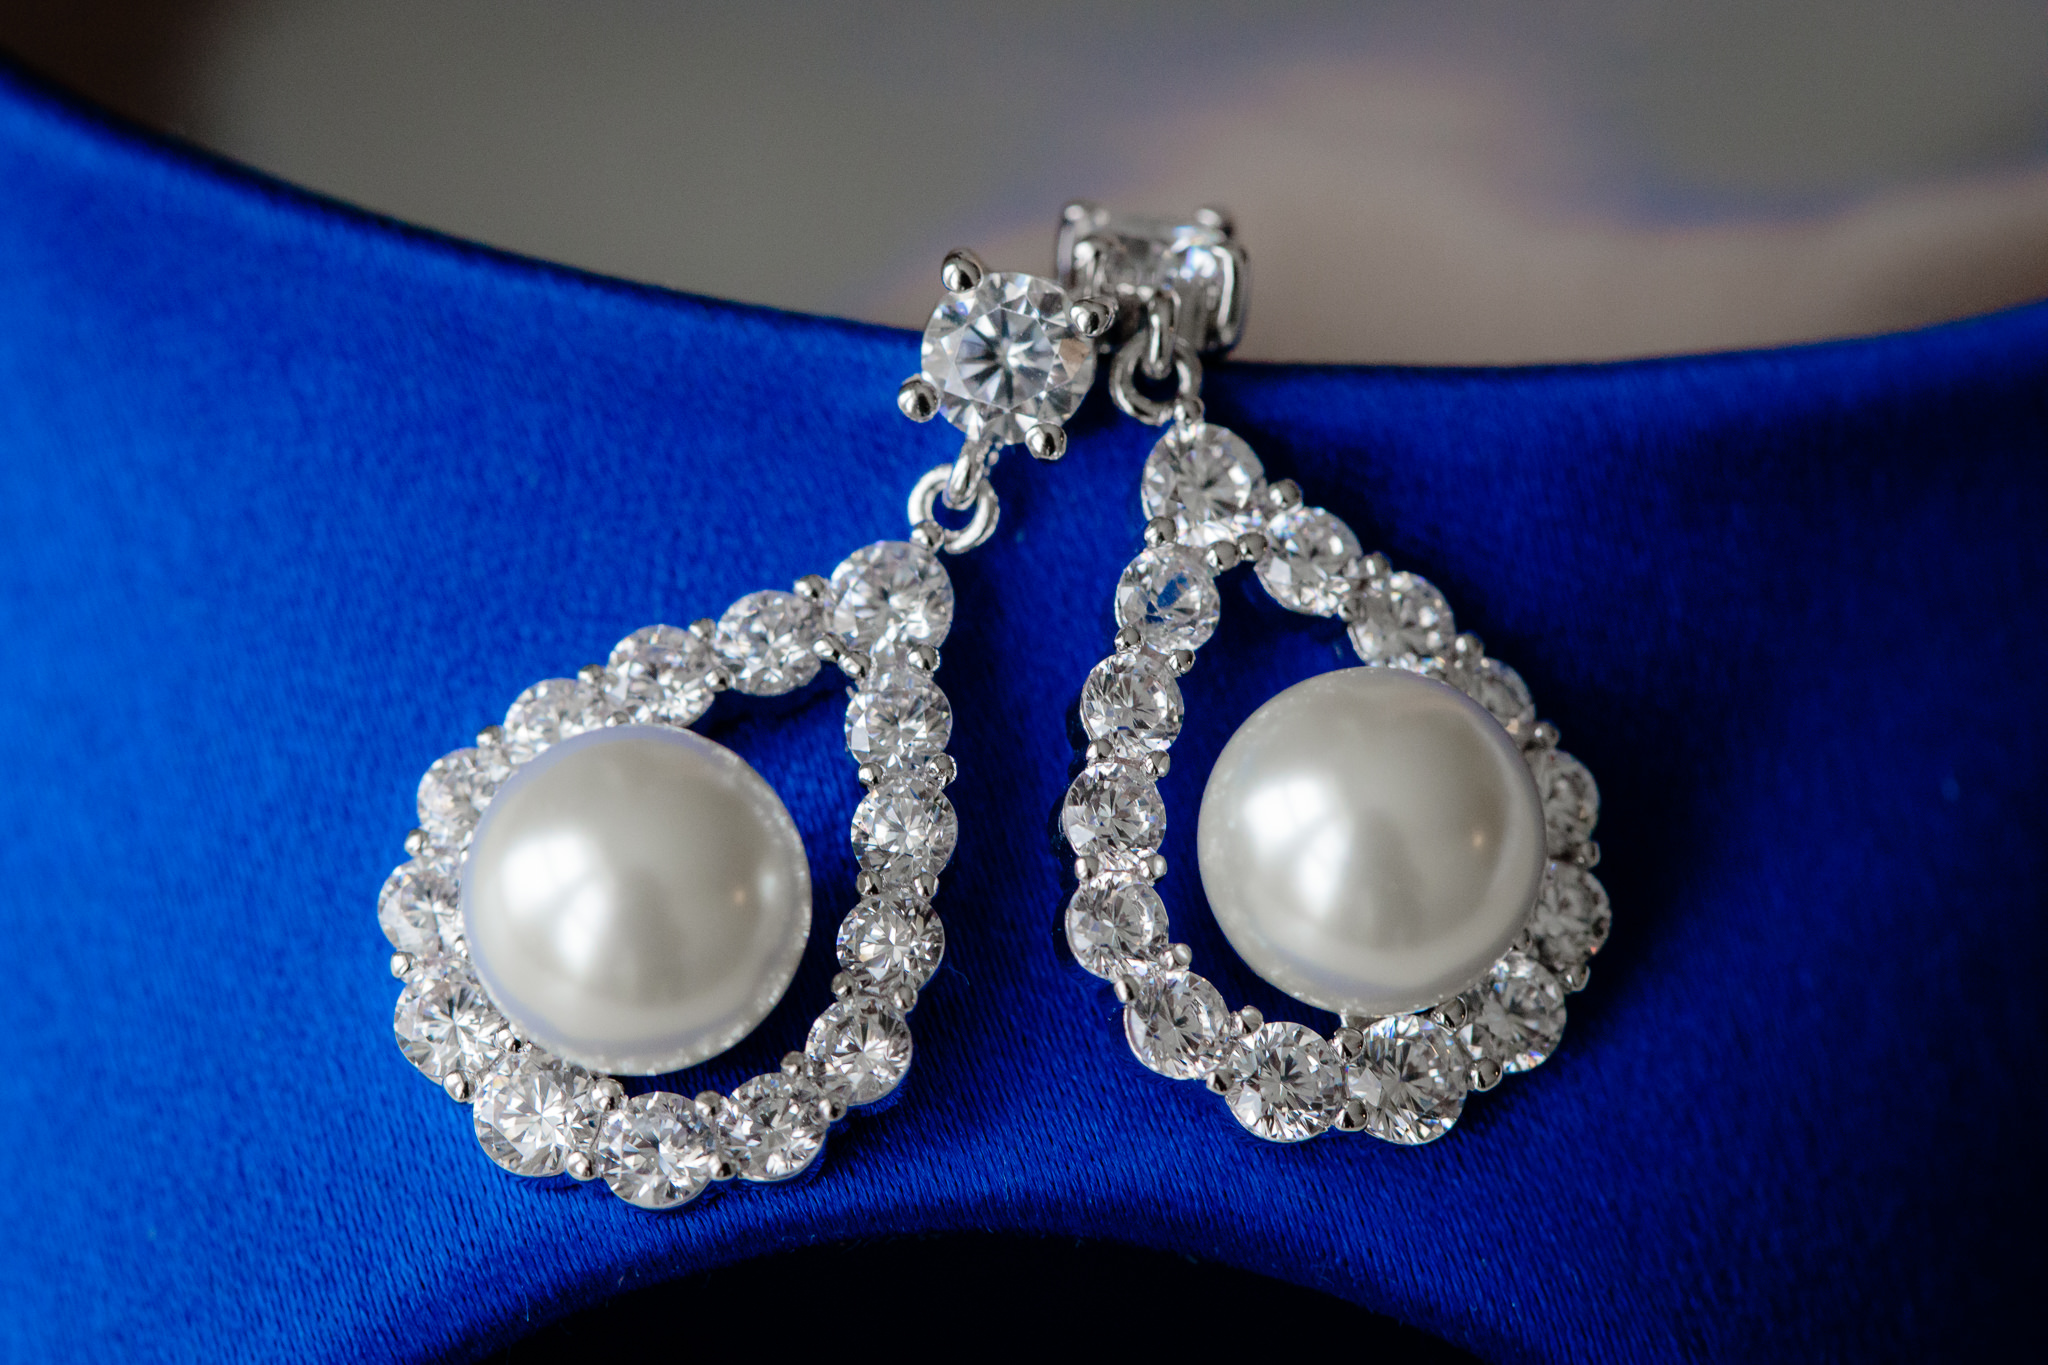 Bride's diamond & pearl teardrop earrings rest on her royal blue shoes